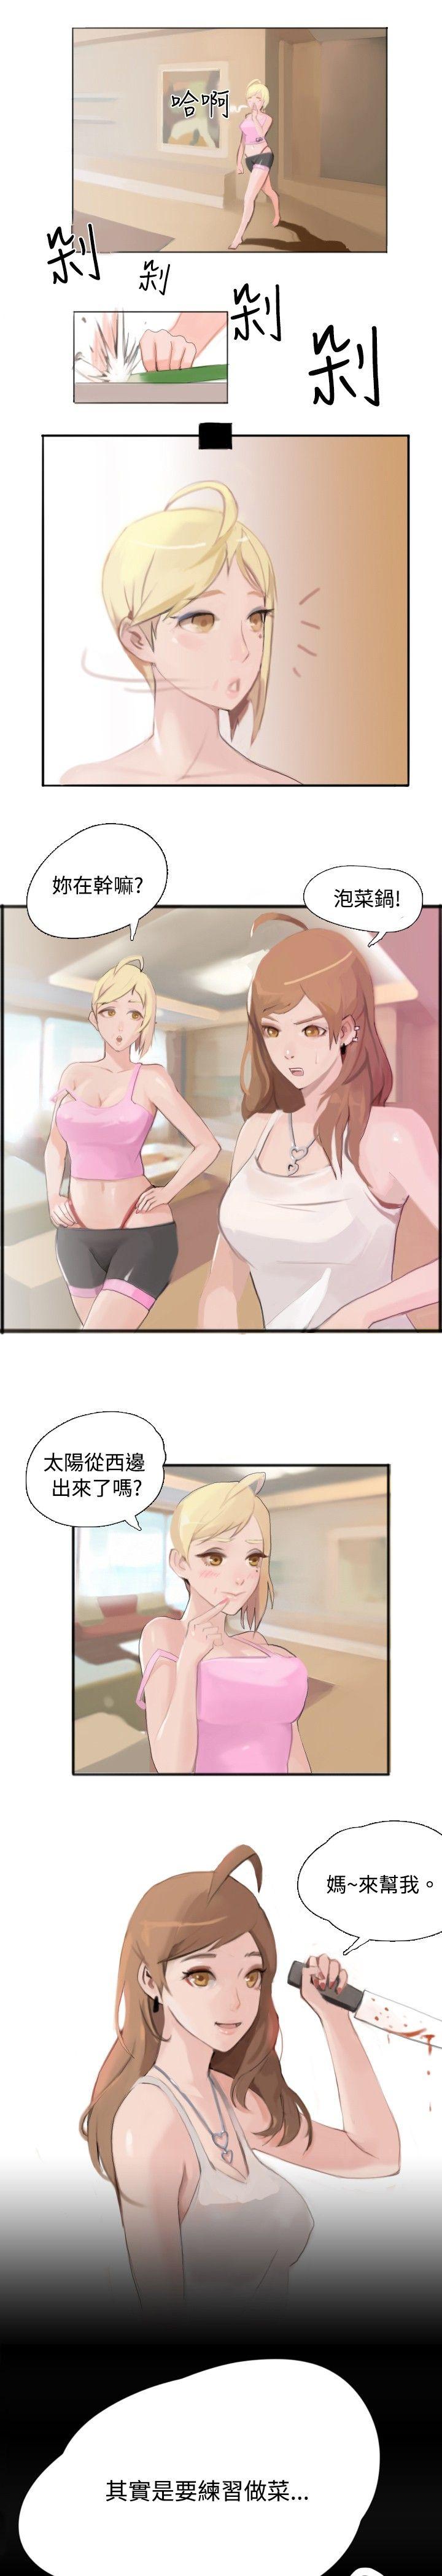 韩国污漫画 秘密Story 与型男主厨的花癡故事(中) 7